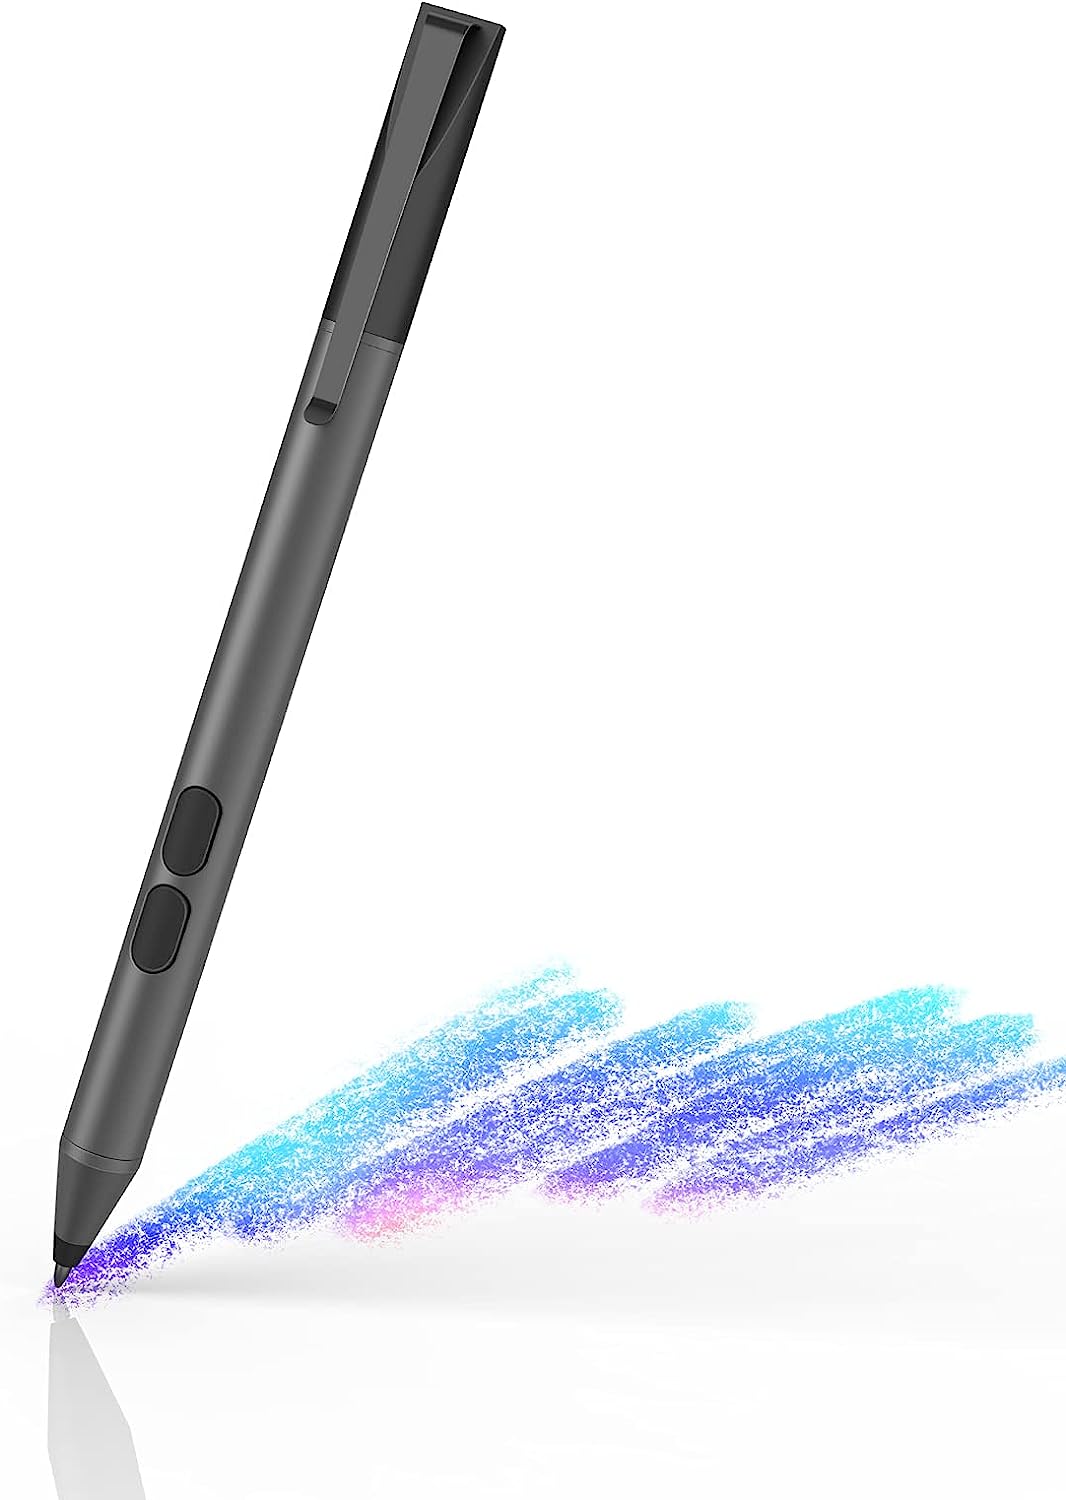 Stylus Pen for HP Envy x360 Touchscreen Laptop [...]